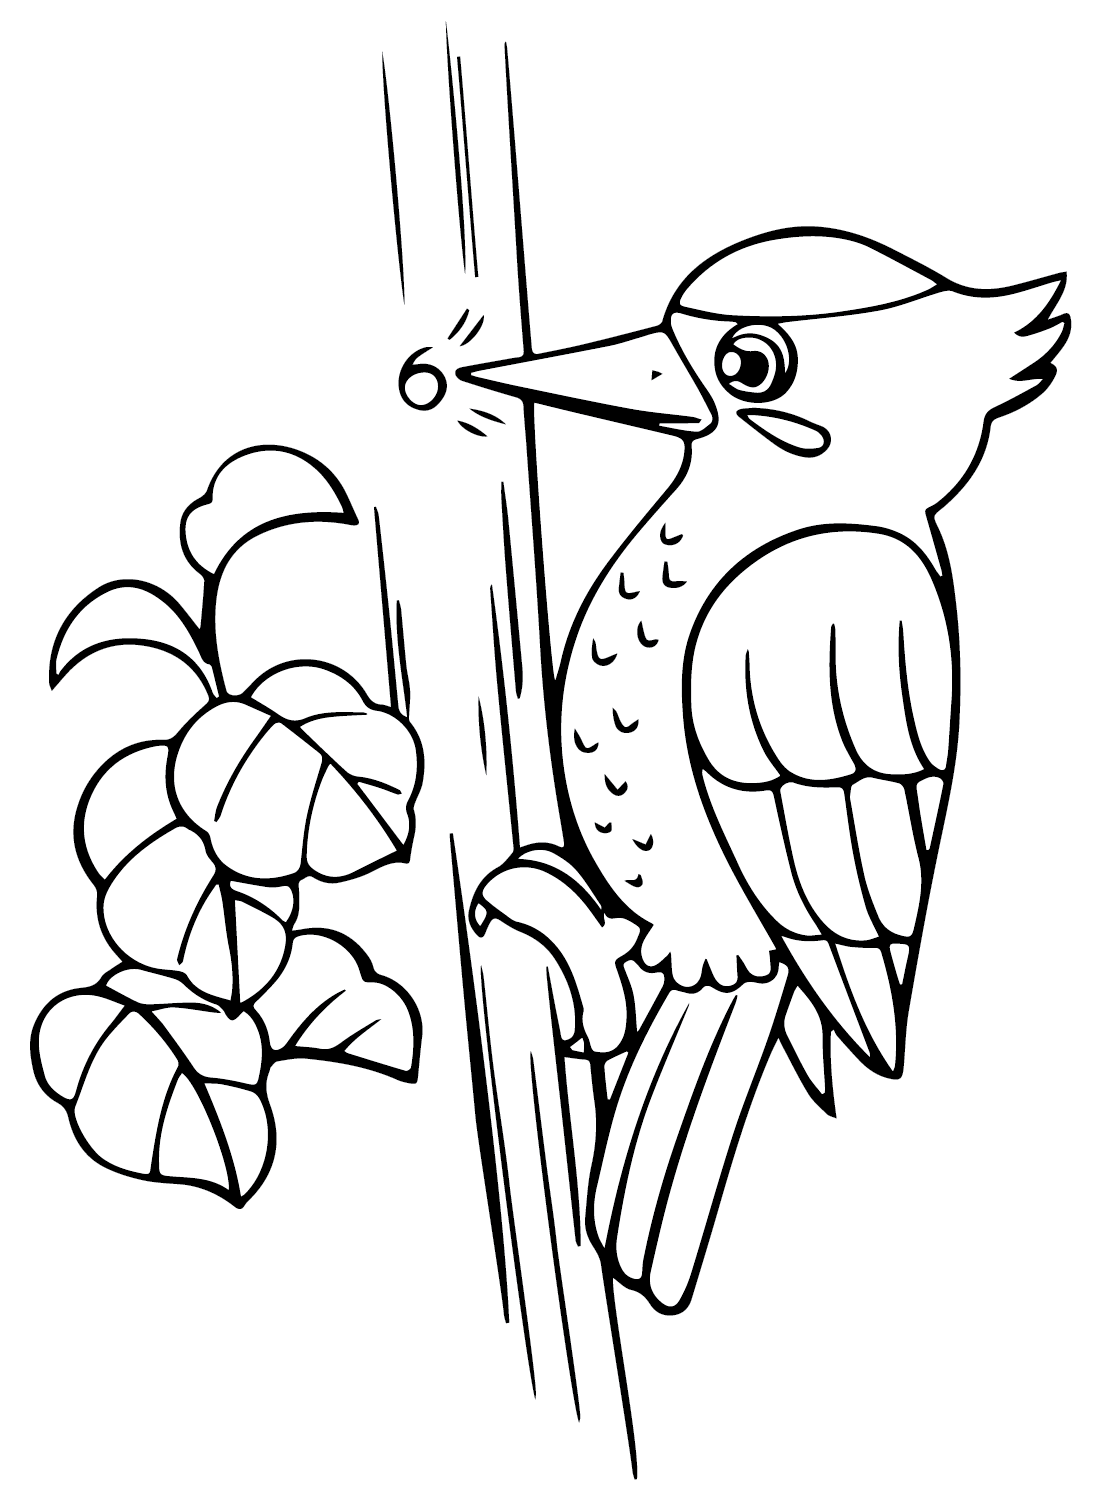 Página para colorear imprimible de pájaro carpintero de pájaro carpintero